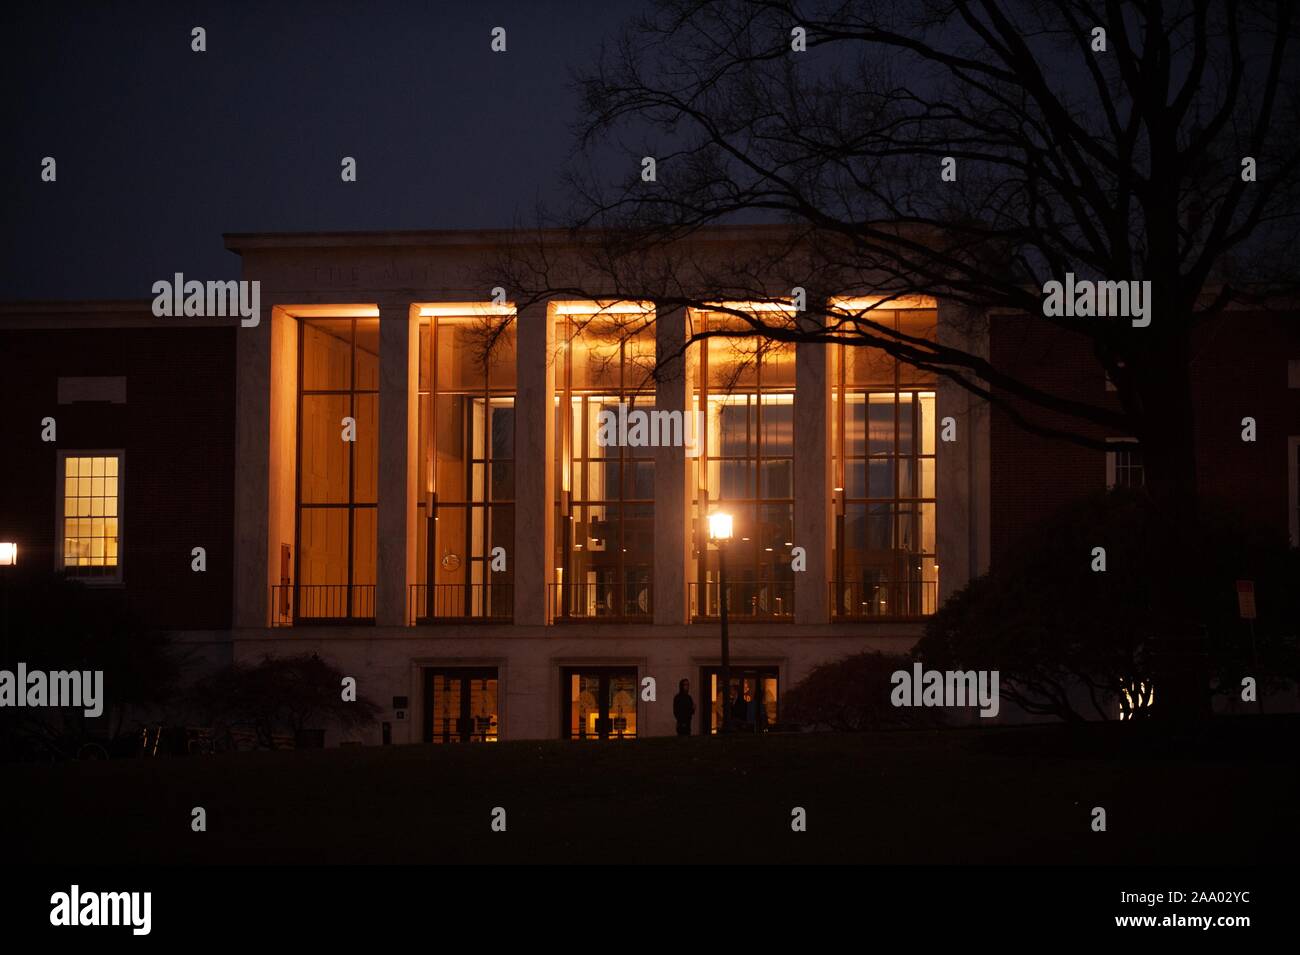 Photo de nuit de l'intérieur de la façade éclairée S Milton Eisenhower Library de l'Université Johns Hopkins, Baltimore, Maryland, Avril, 2009. À partir de la collection photographique de Homewood. () Banque D'Images